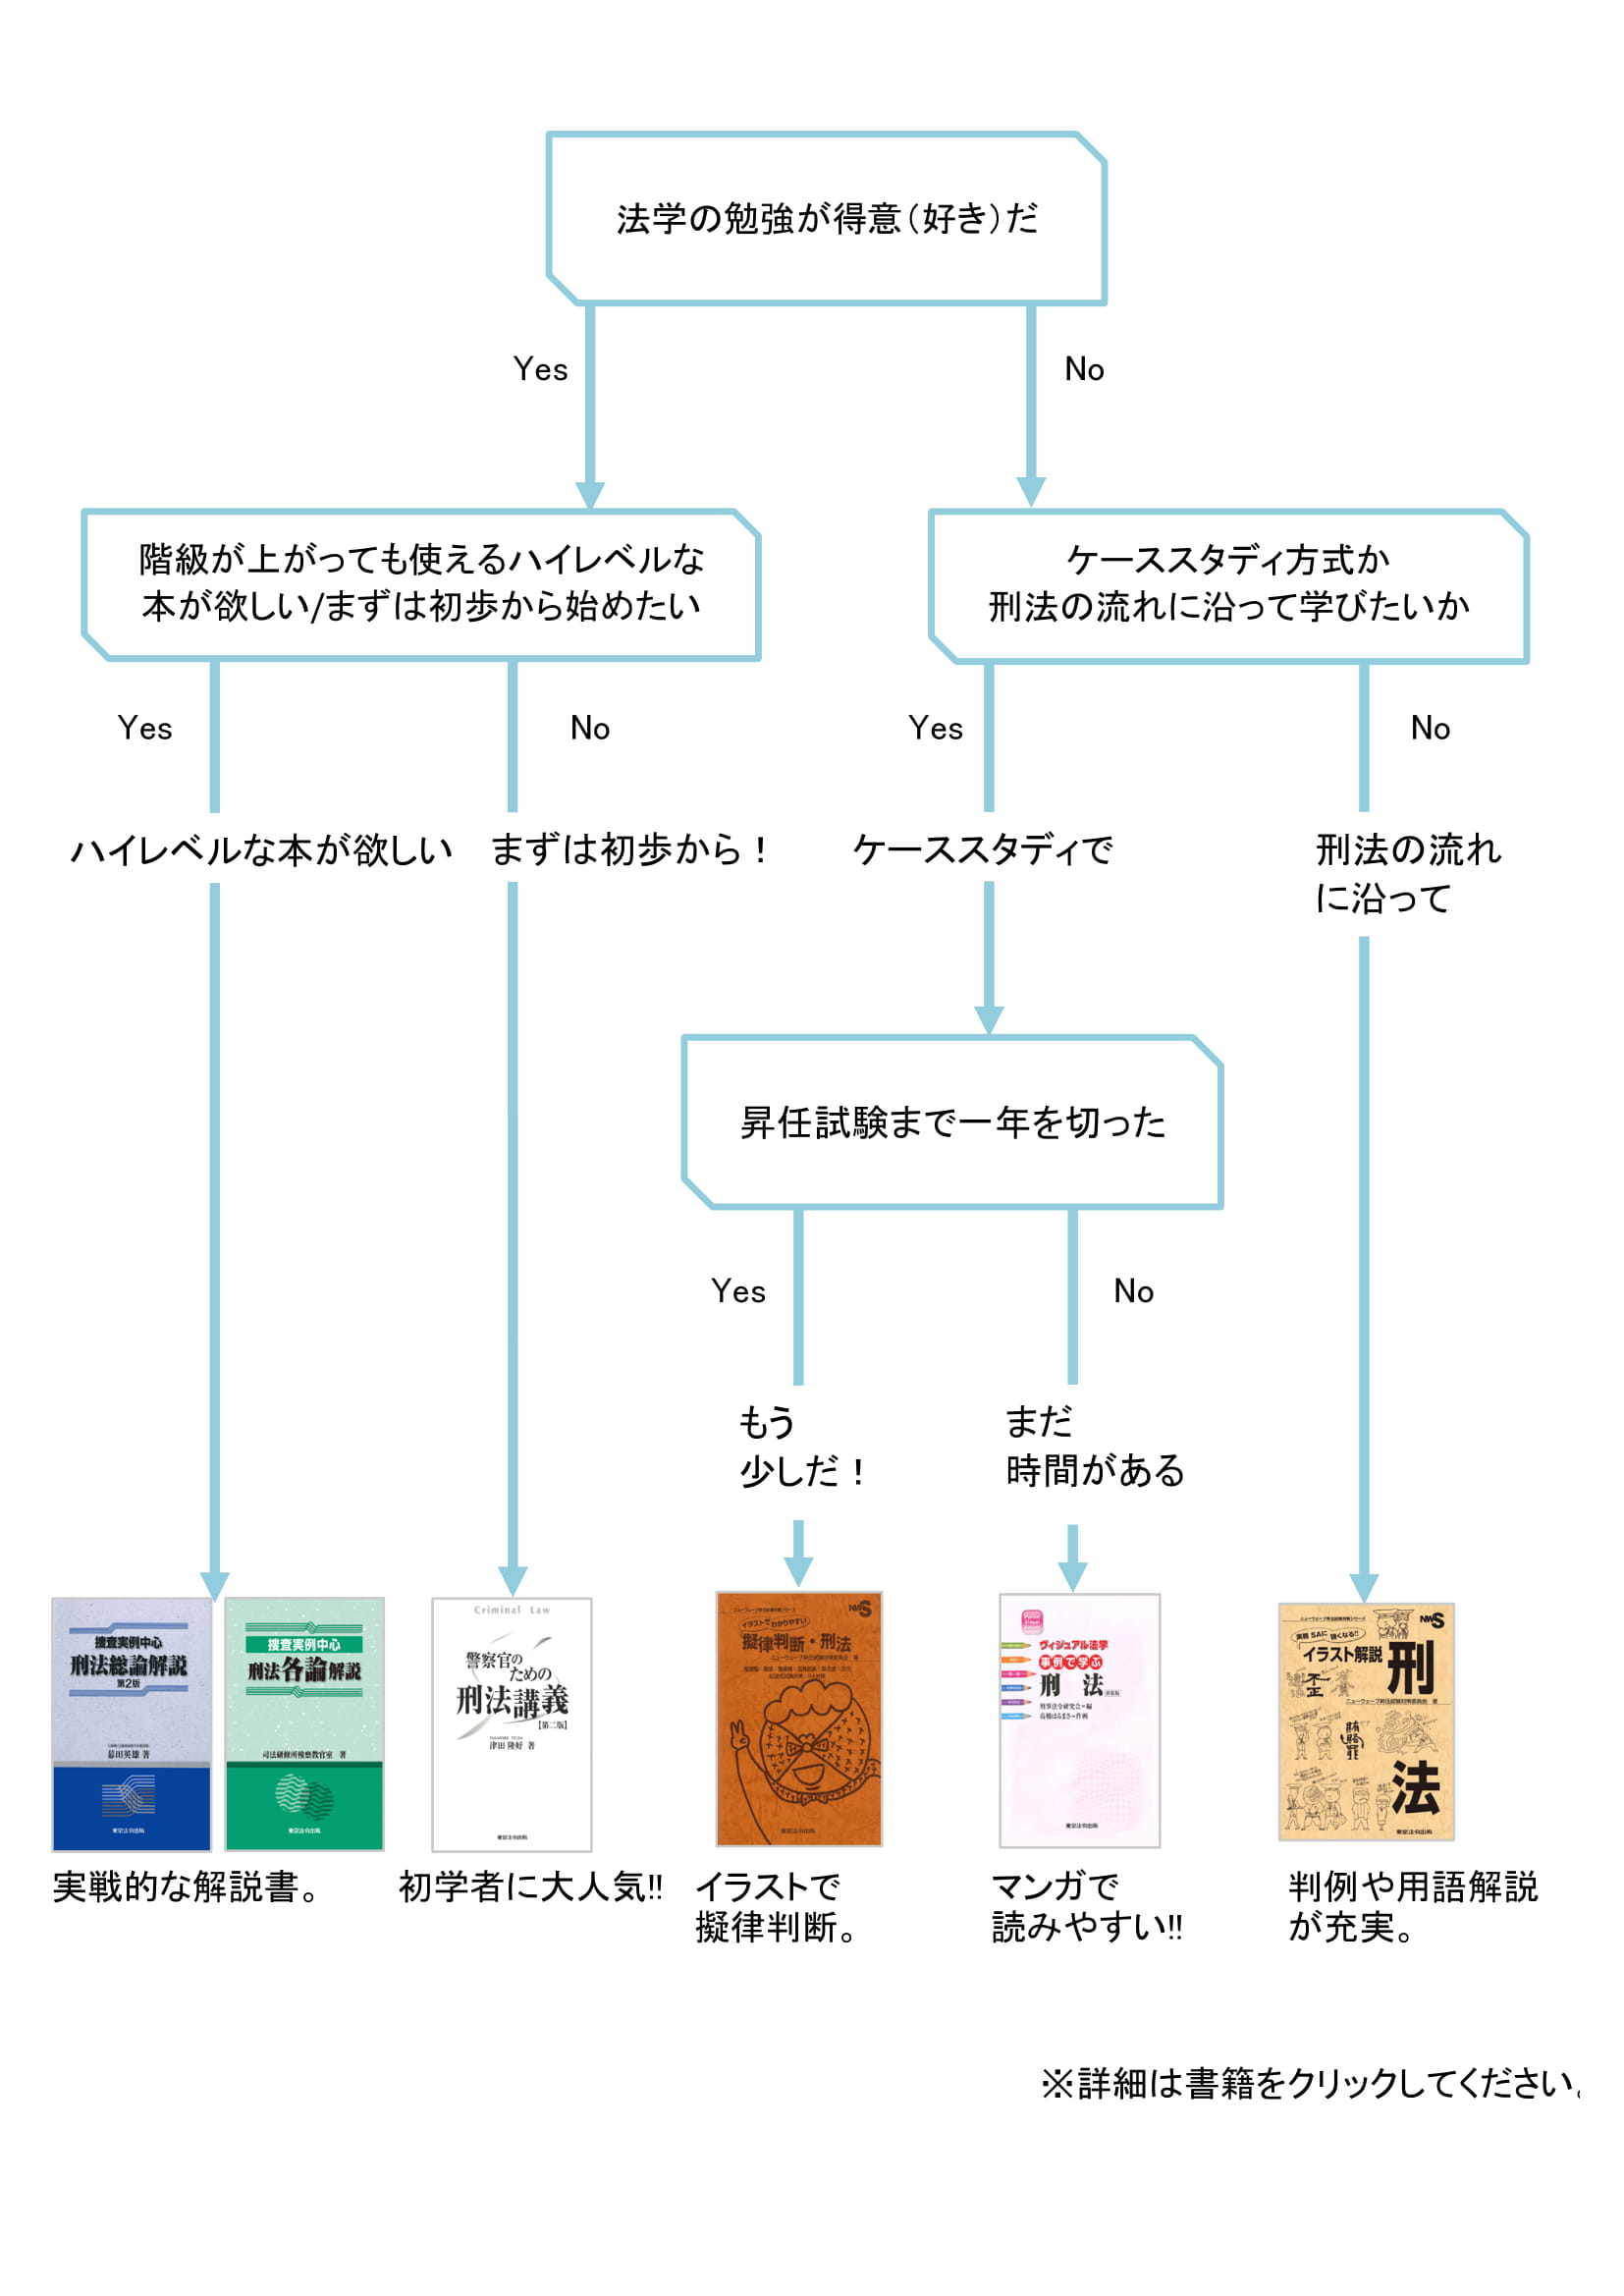 昇任試験対策や警察学校入校準備にオススメのテキスト 東京法令出版